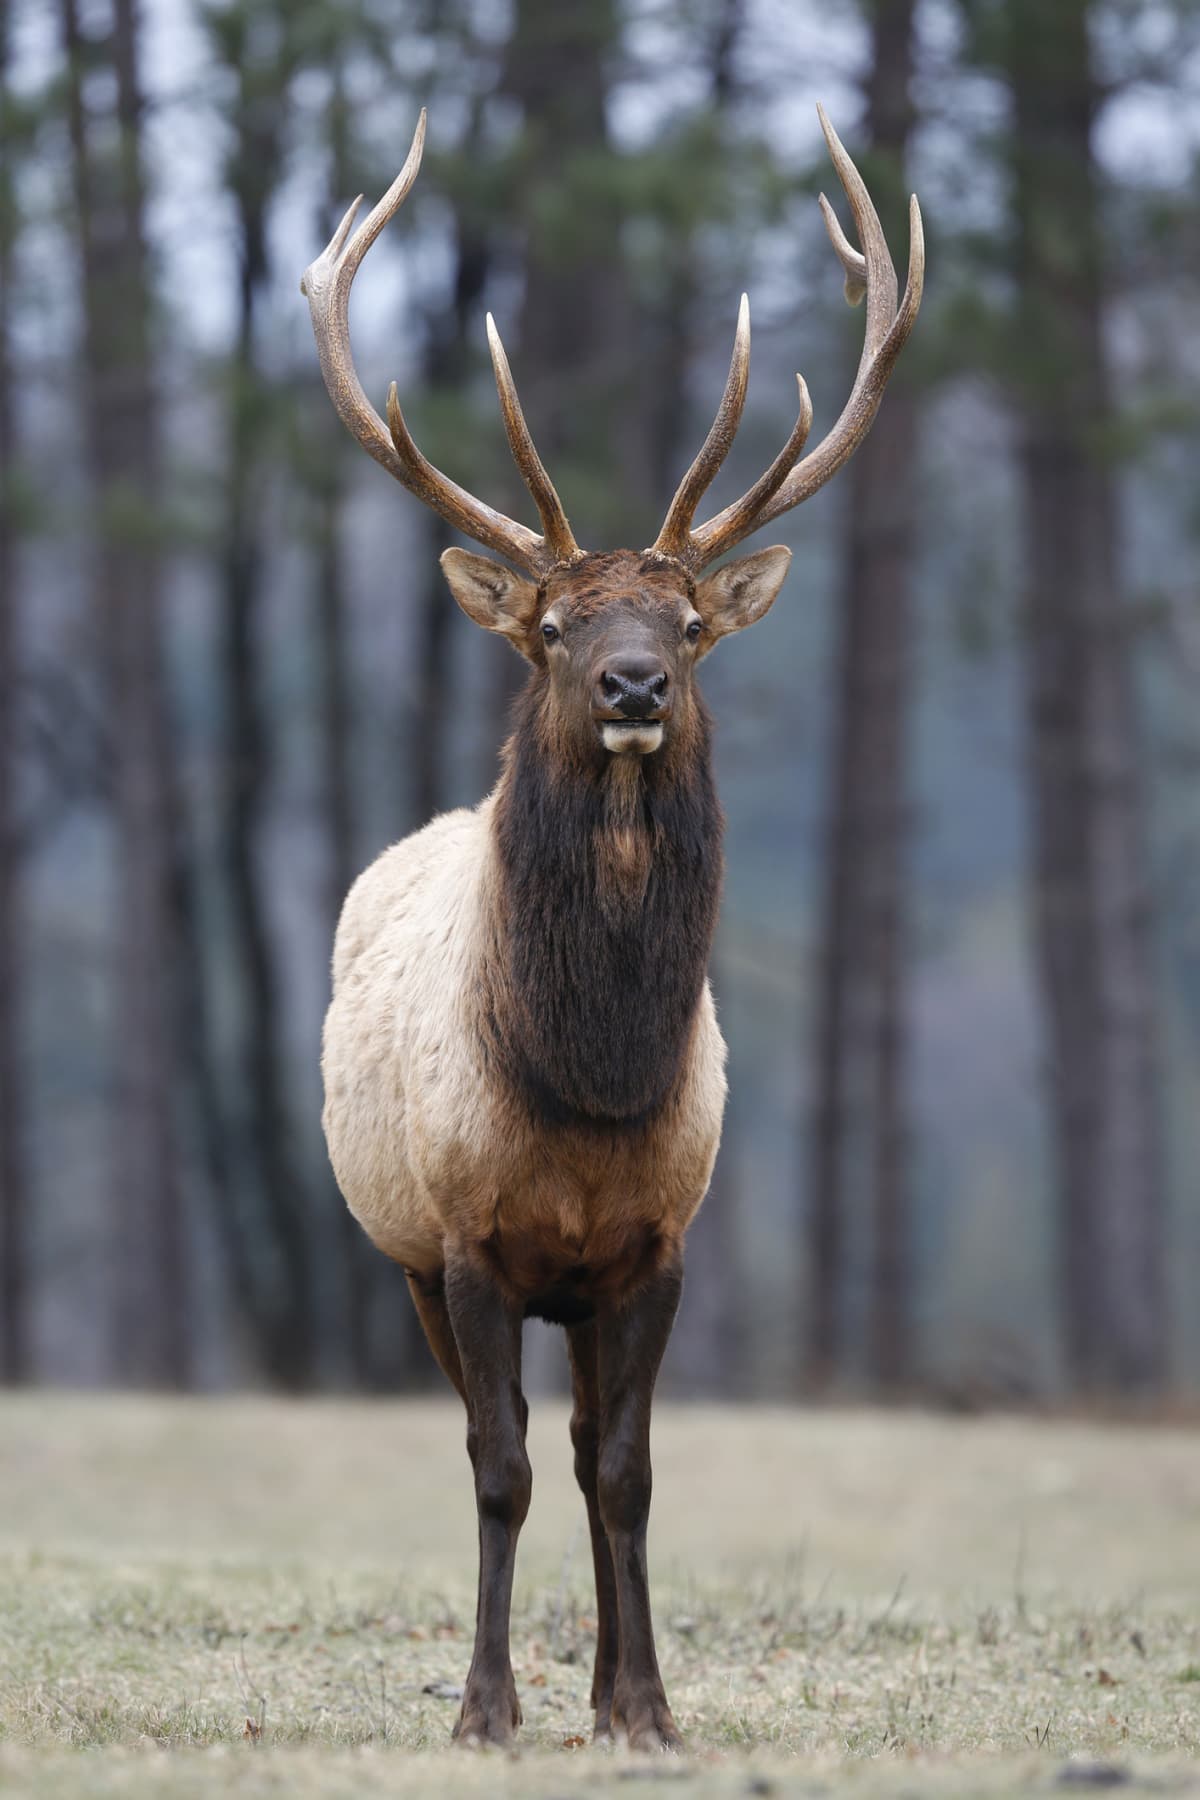 Bull Elk roaming in the forest